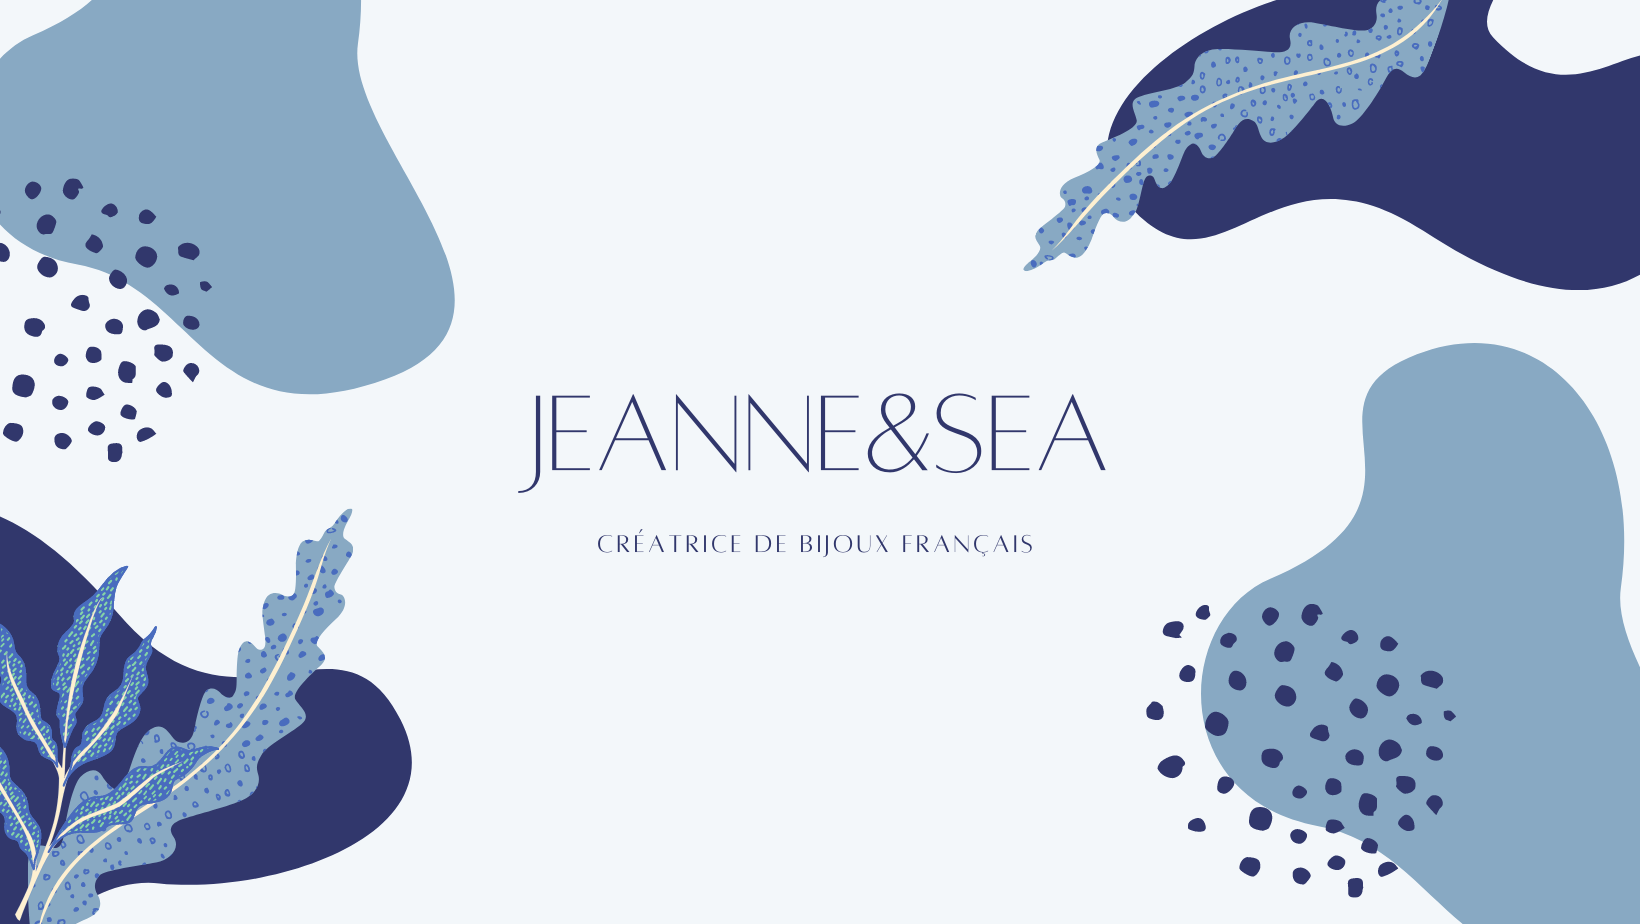 Jeanne&Sea